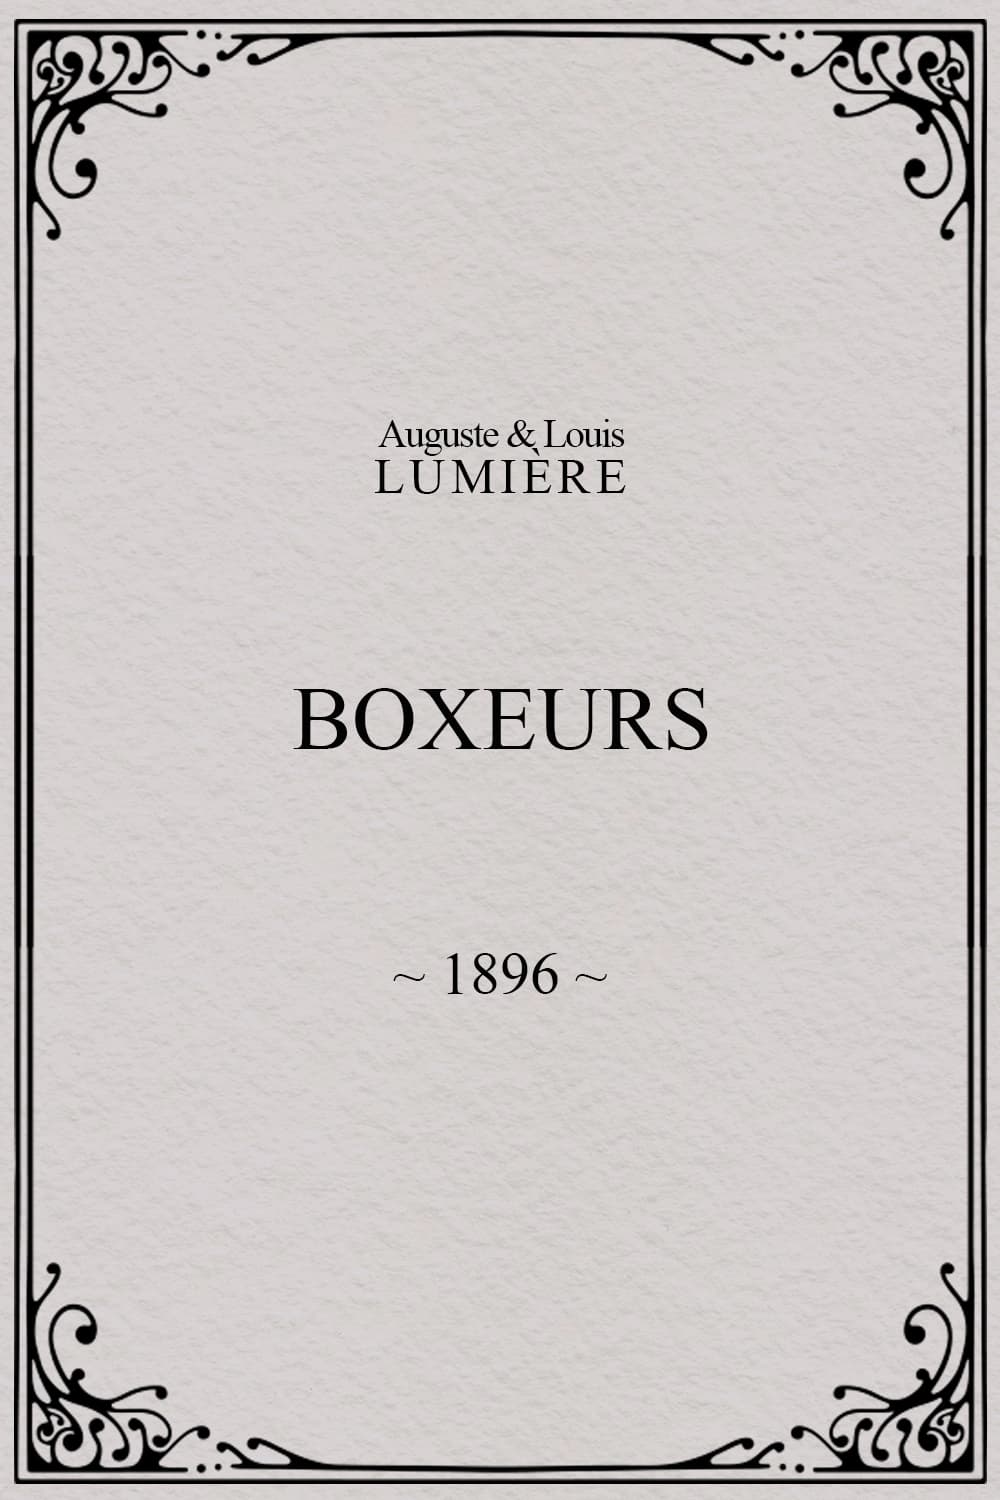 Boxeurs (1896)